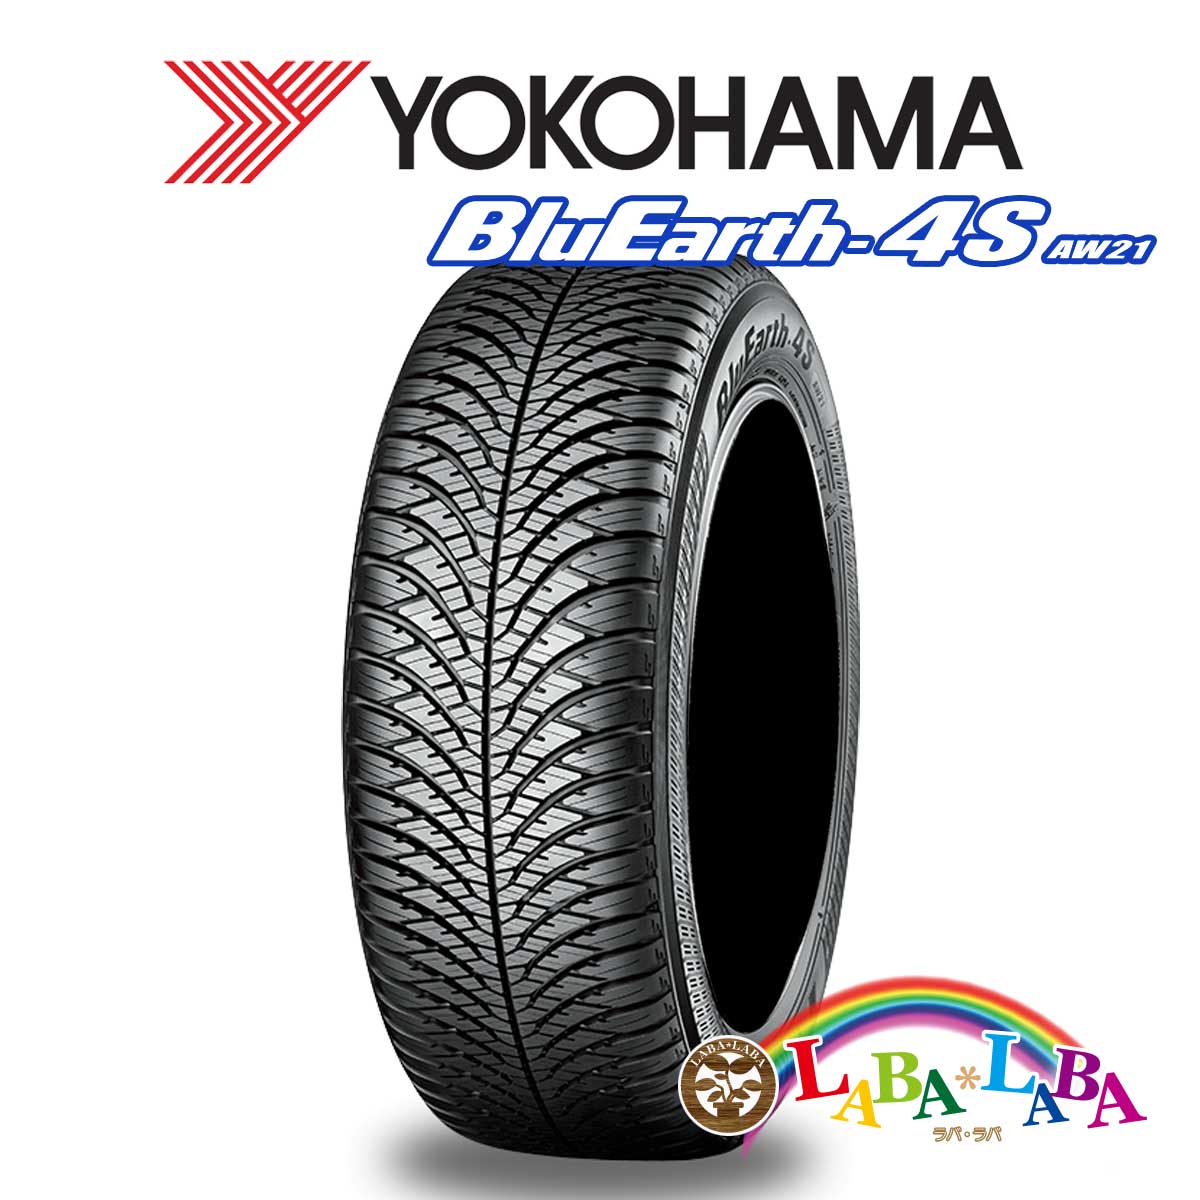 ２本以上送料無料 国産タイヤ オールシーズン 新品 即日出荷 タイヤのみ YOKOHAMA ヨコハマ 再入荷 予約販売 BluEarth-4S 185 86H AW21 55R15 ブルーアース XL